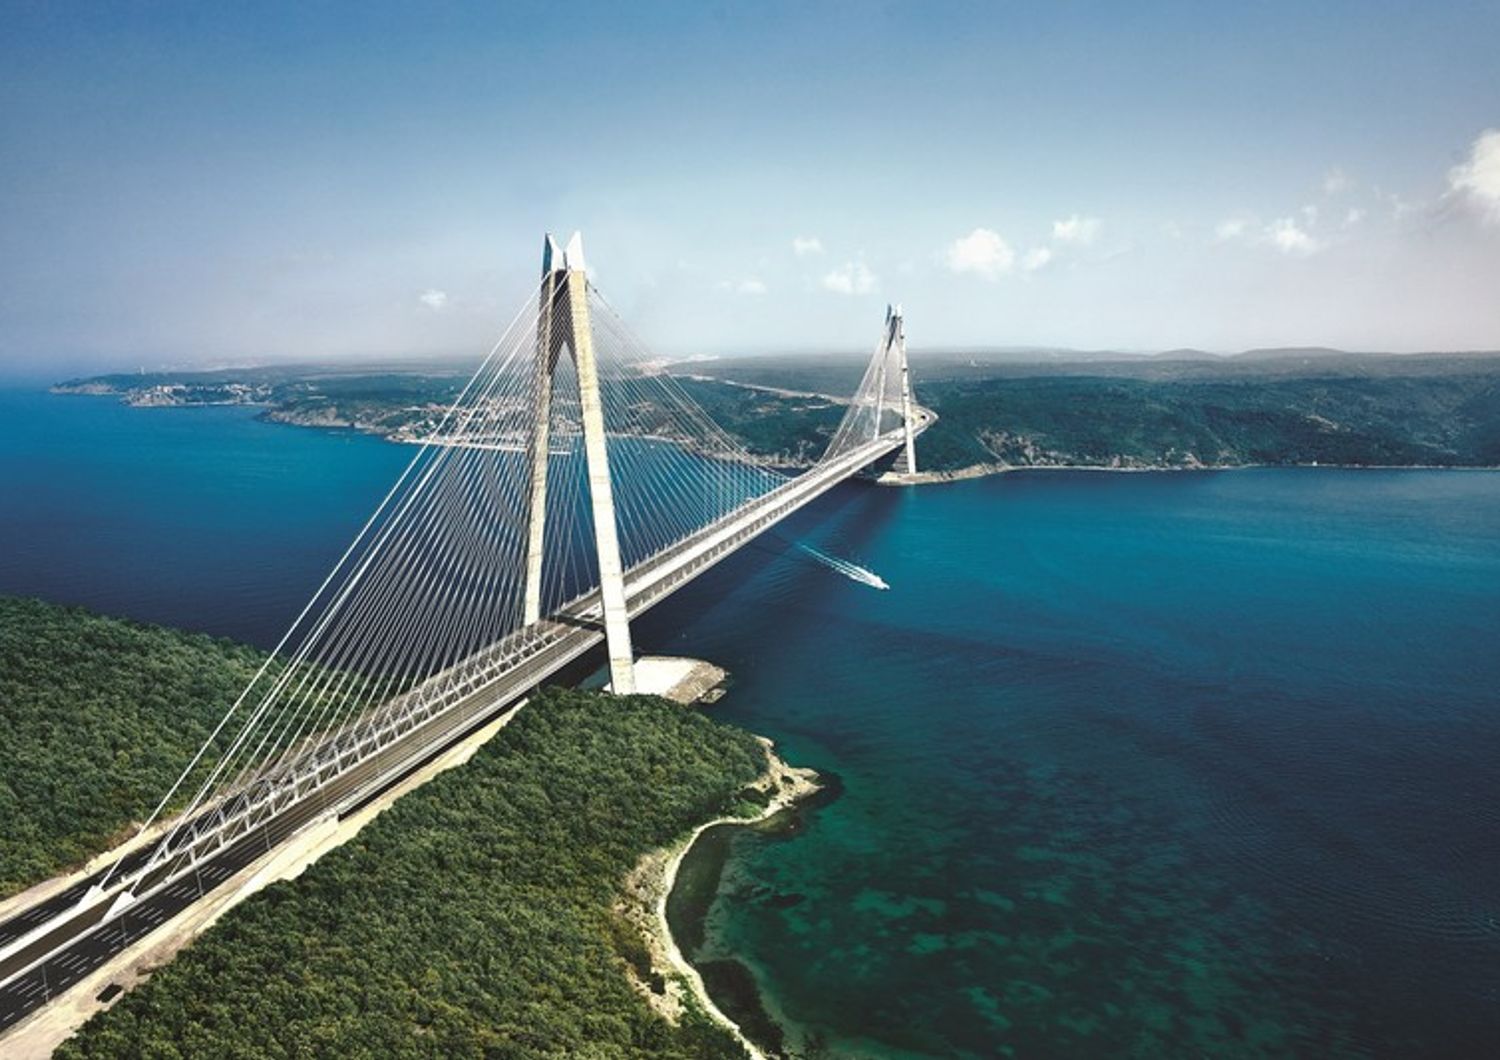 Yavuz Sultan Selim Turchia, Istanbul, ponte sospeso piu' largo del mondo